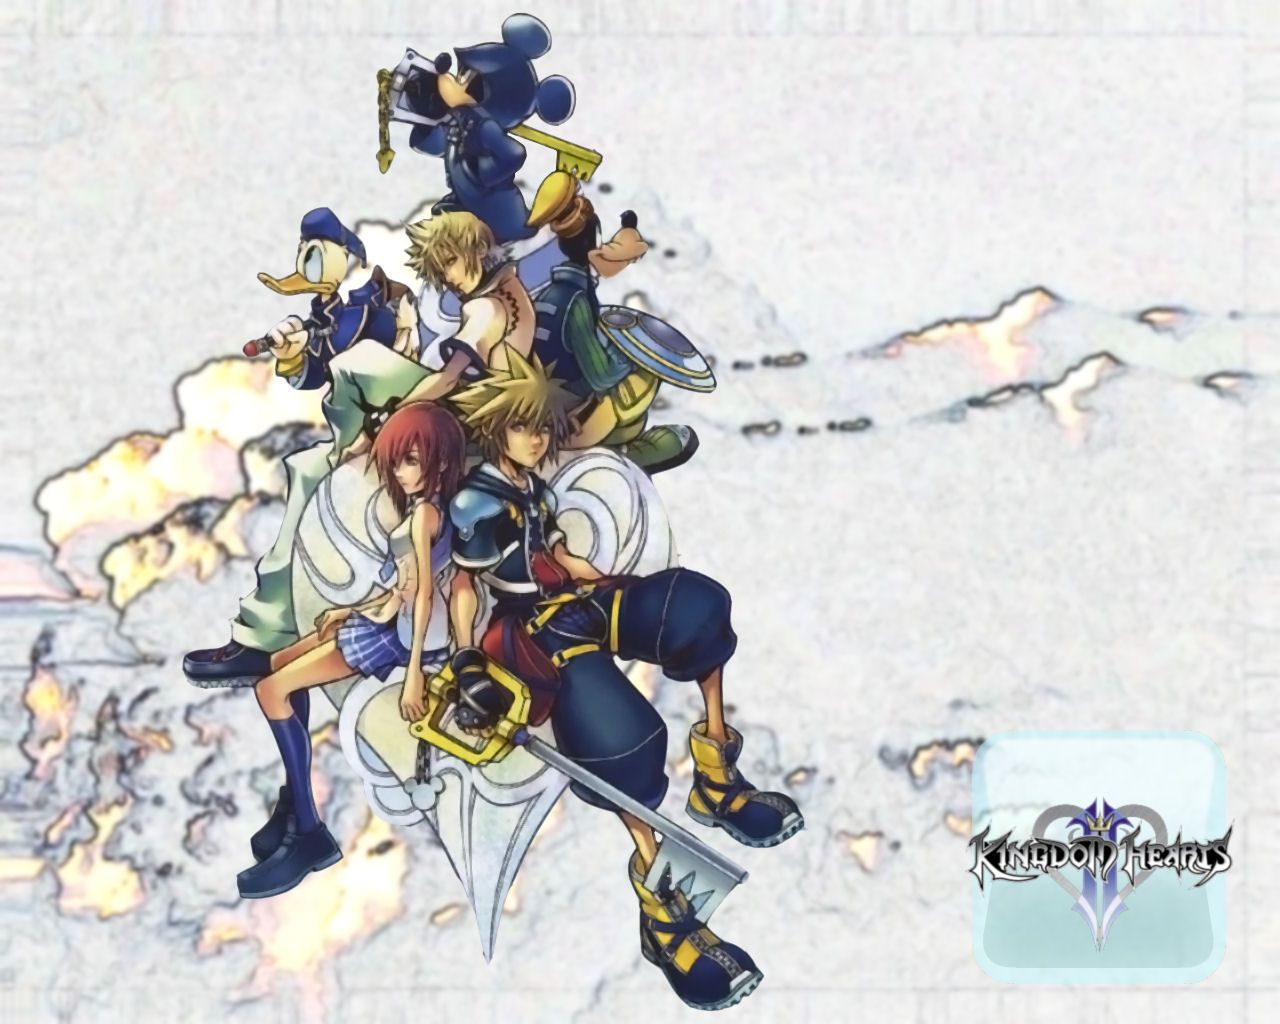 Kingdom Hearts II Wallpaper by Encorer on DeviantArt